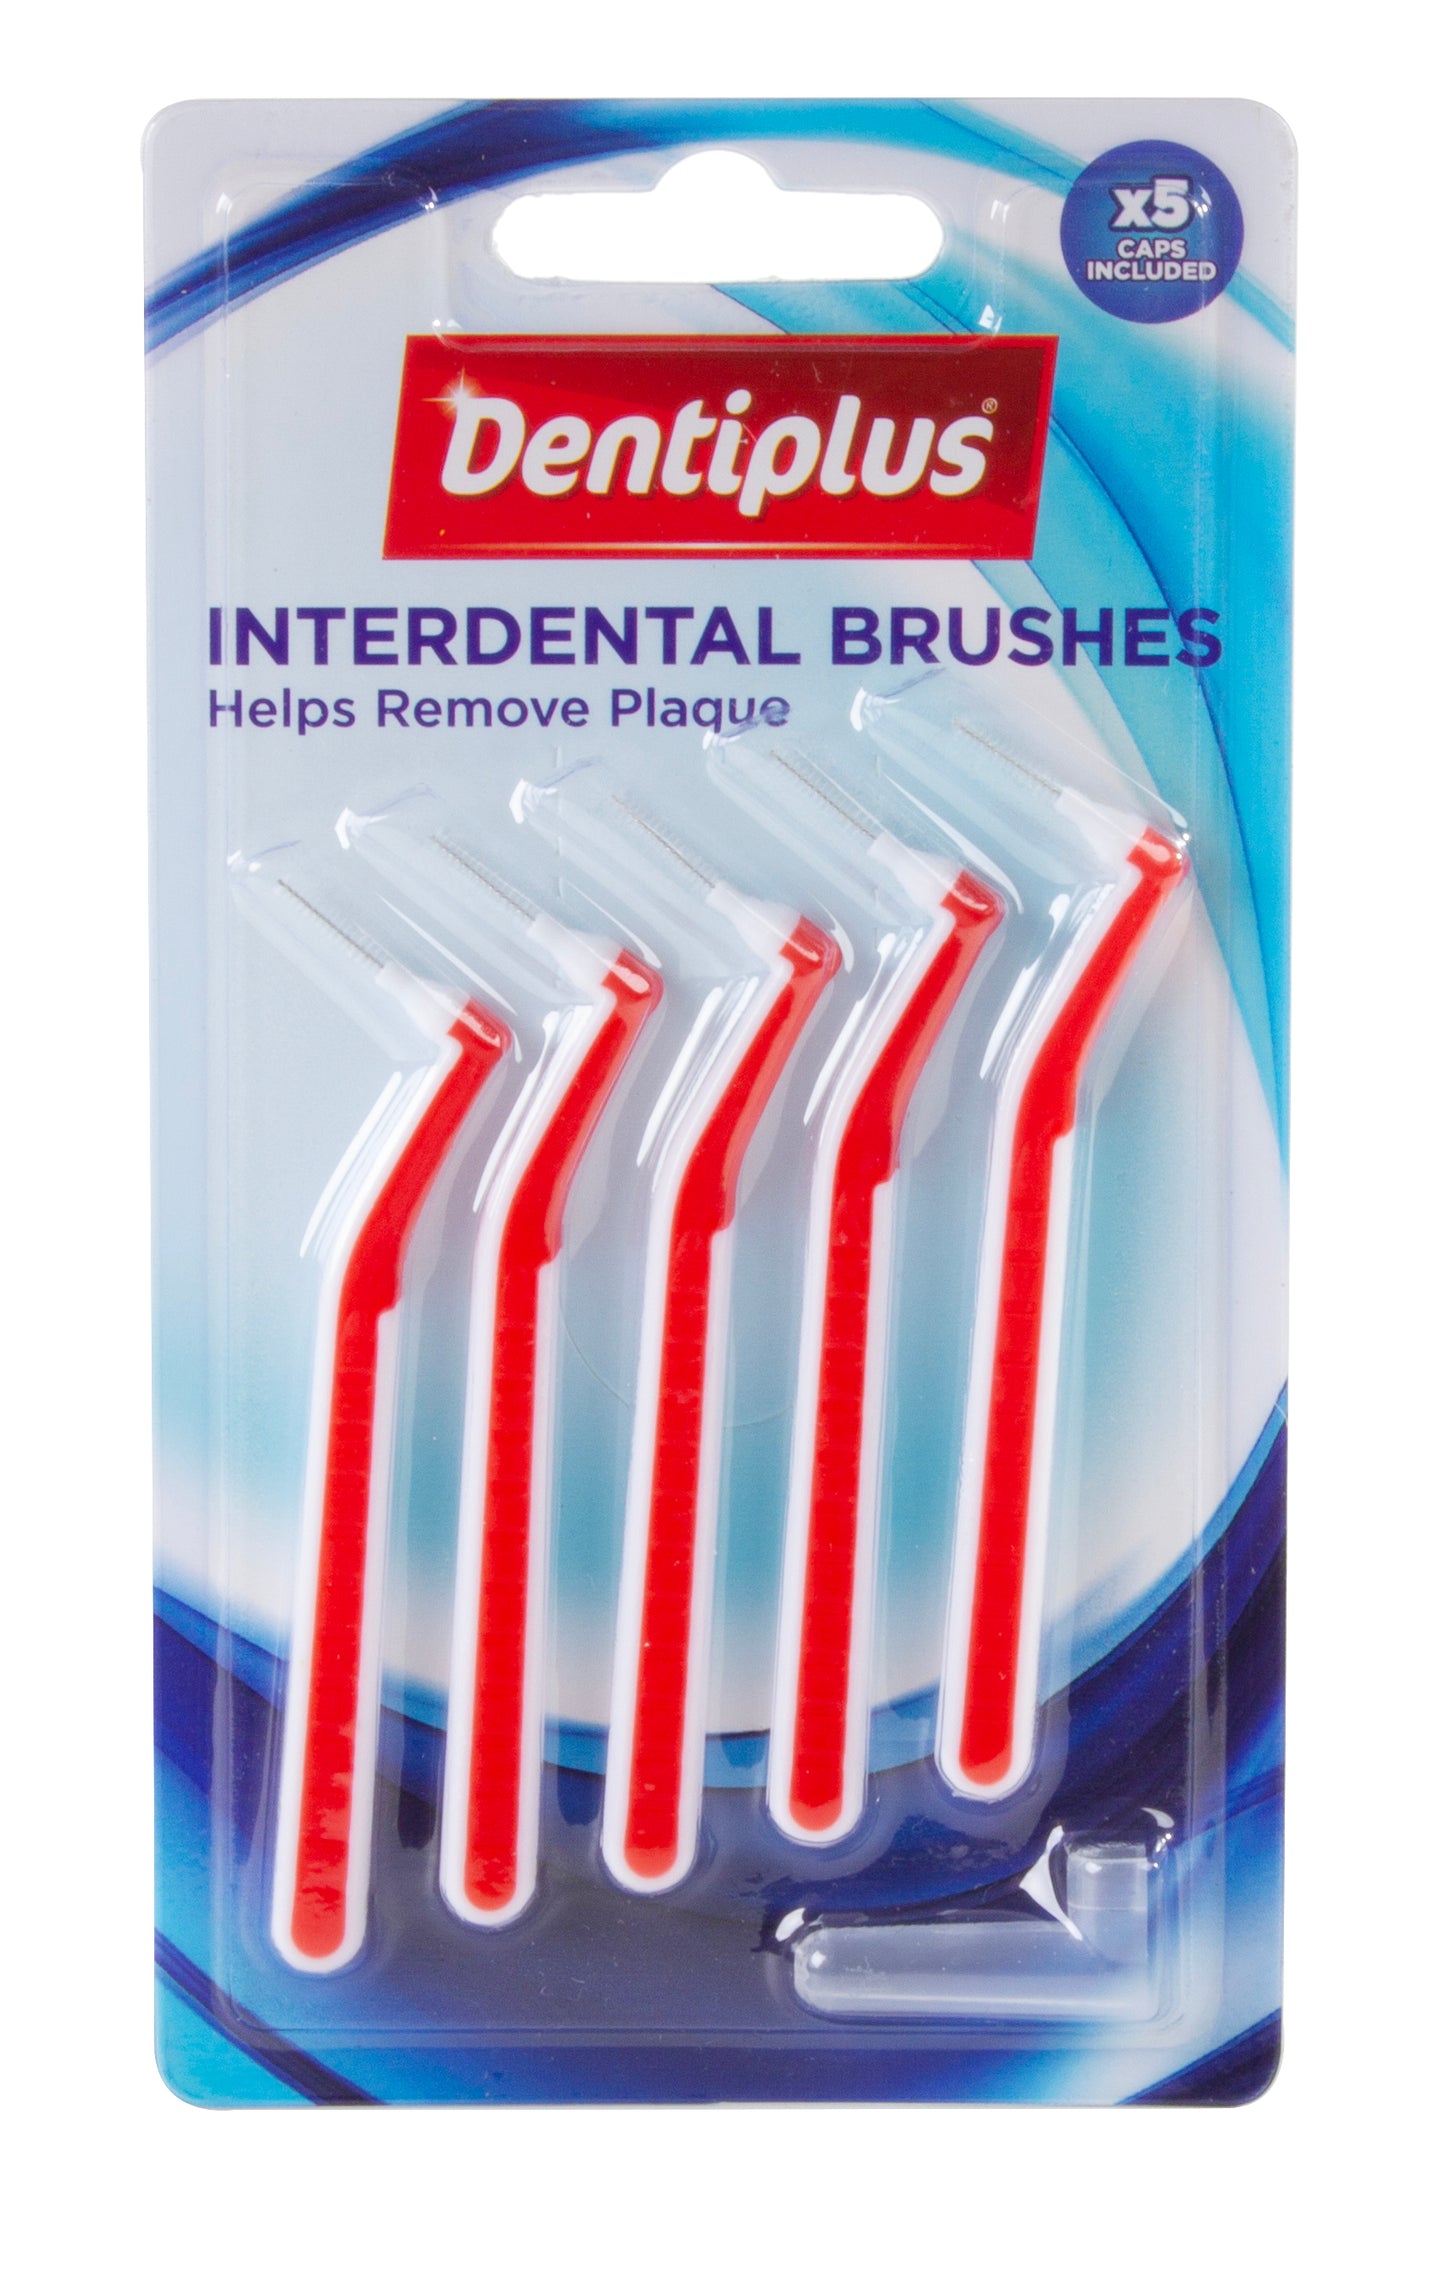 £1.49 Interdental Brushes (12)